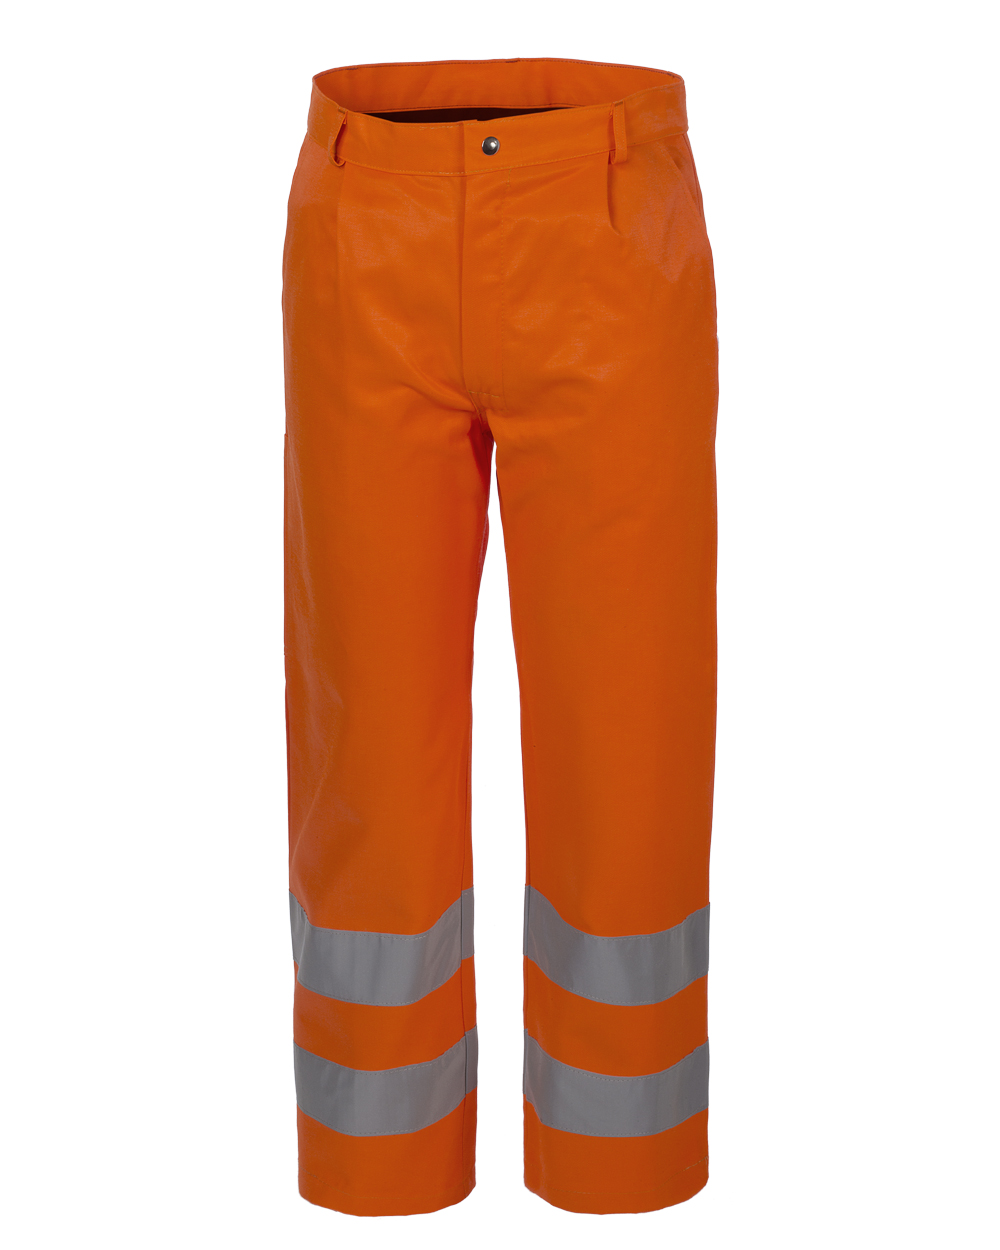 Pantalone Alta Visibilità imbottito c/bande 3M col.arancio